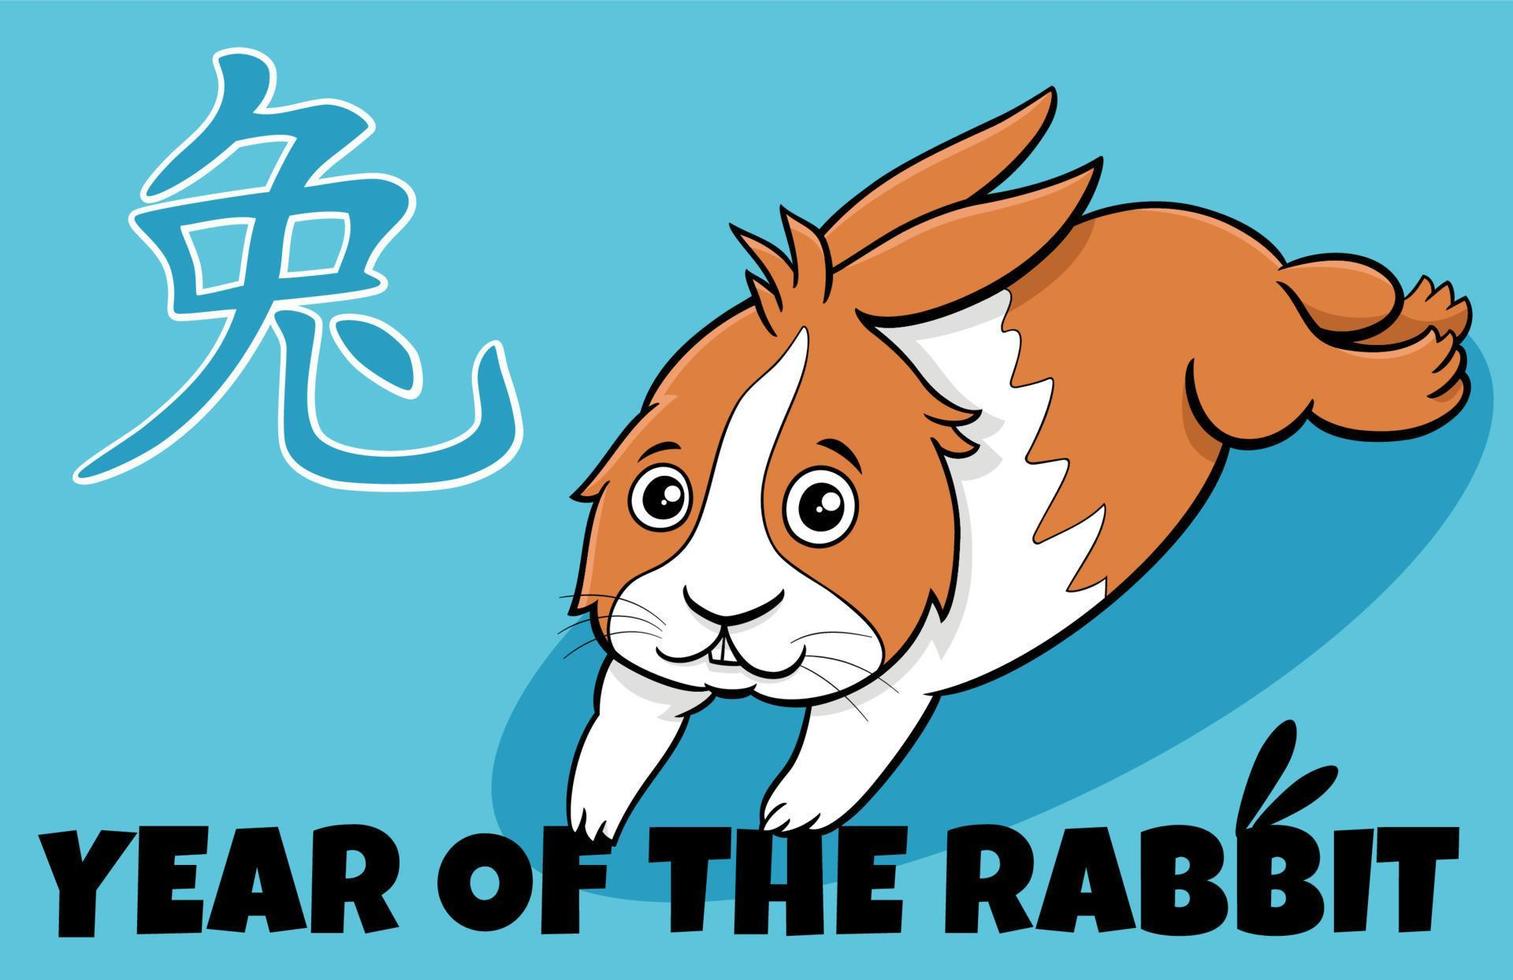 chinesisches neujahrsdesign mit lustigem karikaturkaninchen vektor